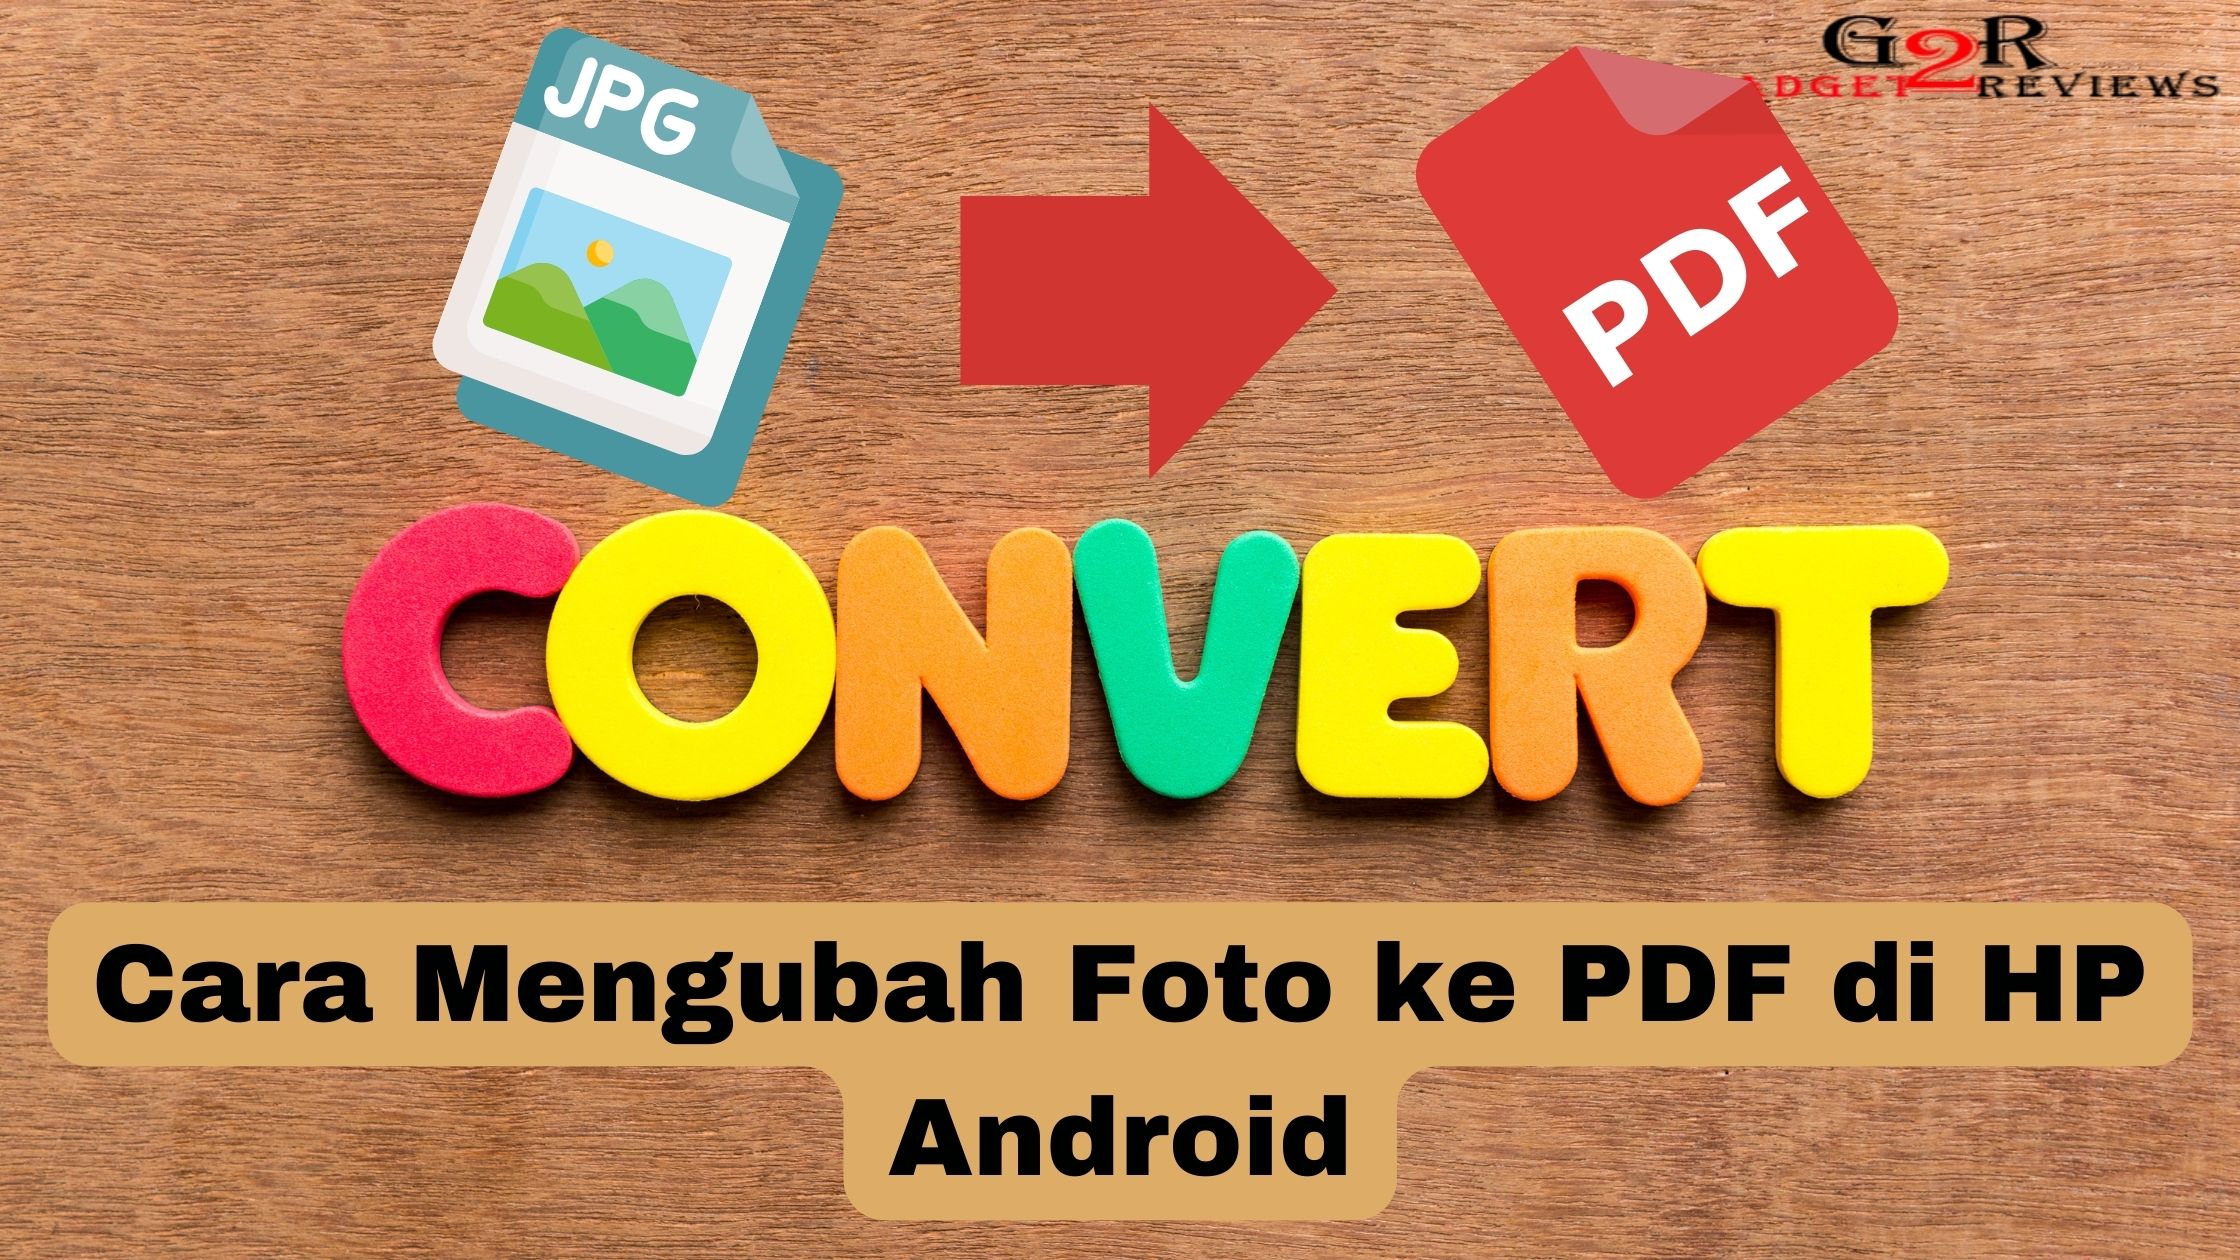 Cara Mengubah Foto ke PDF di HP Android